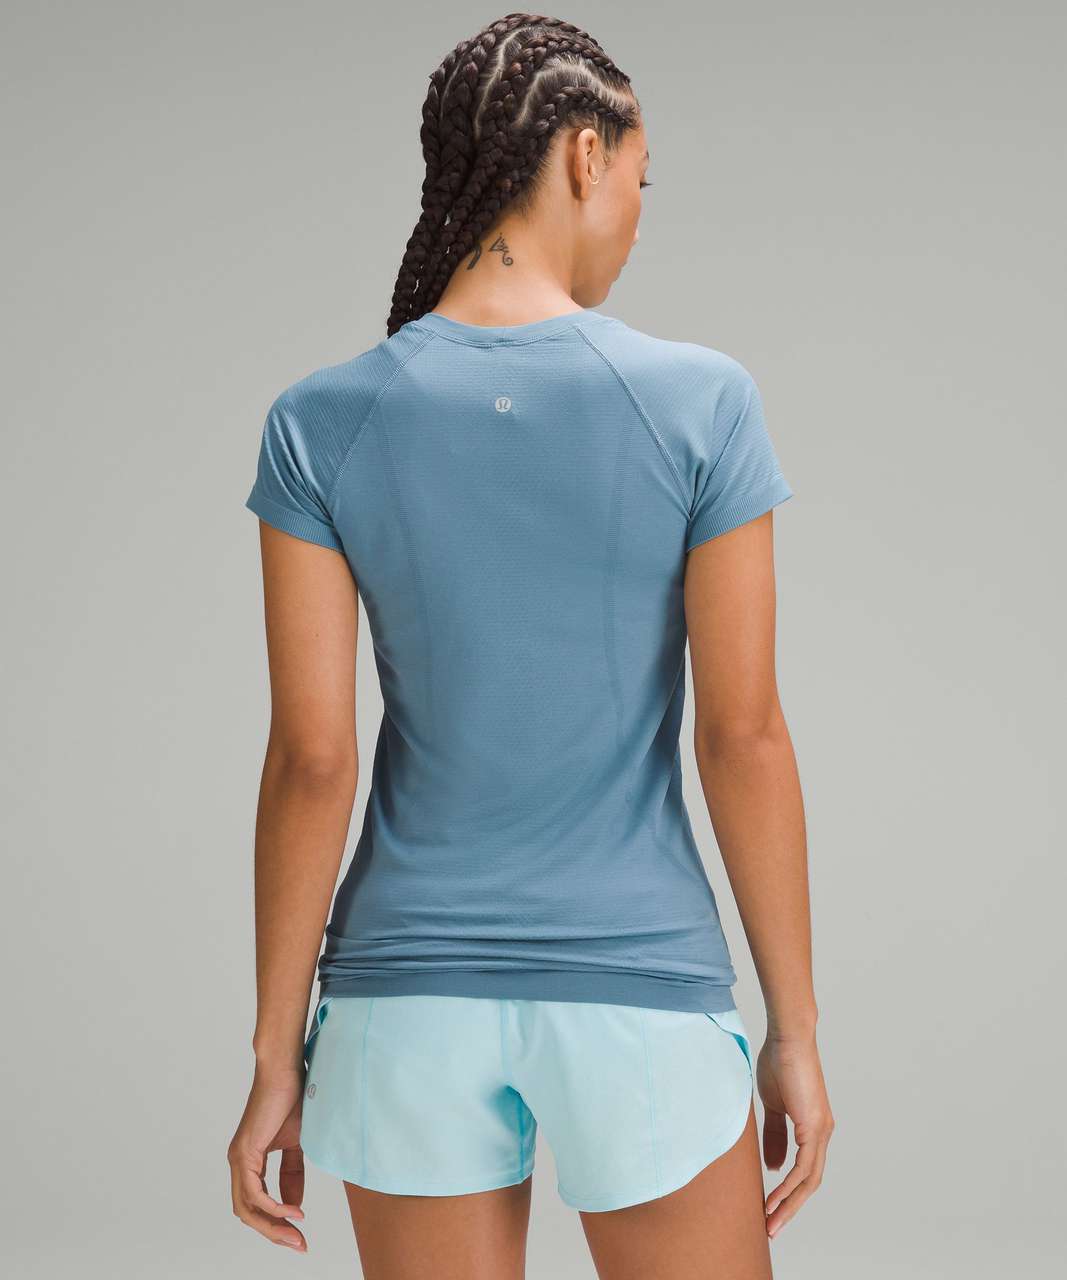 Lululemon Swiftly Tech Short-Sleeve Shirt 2.0 - Utility Blue / Utility Blue